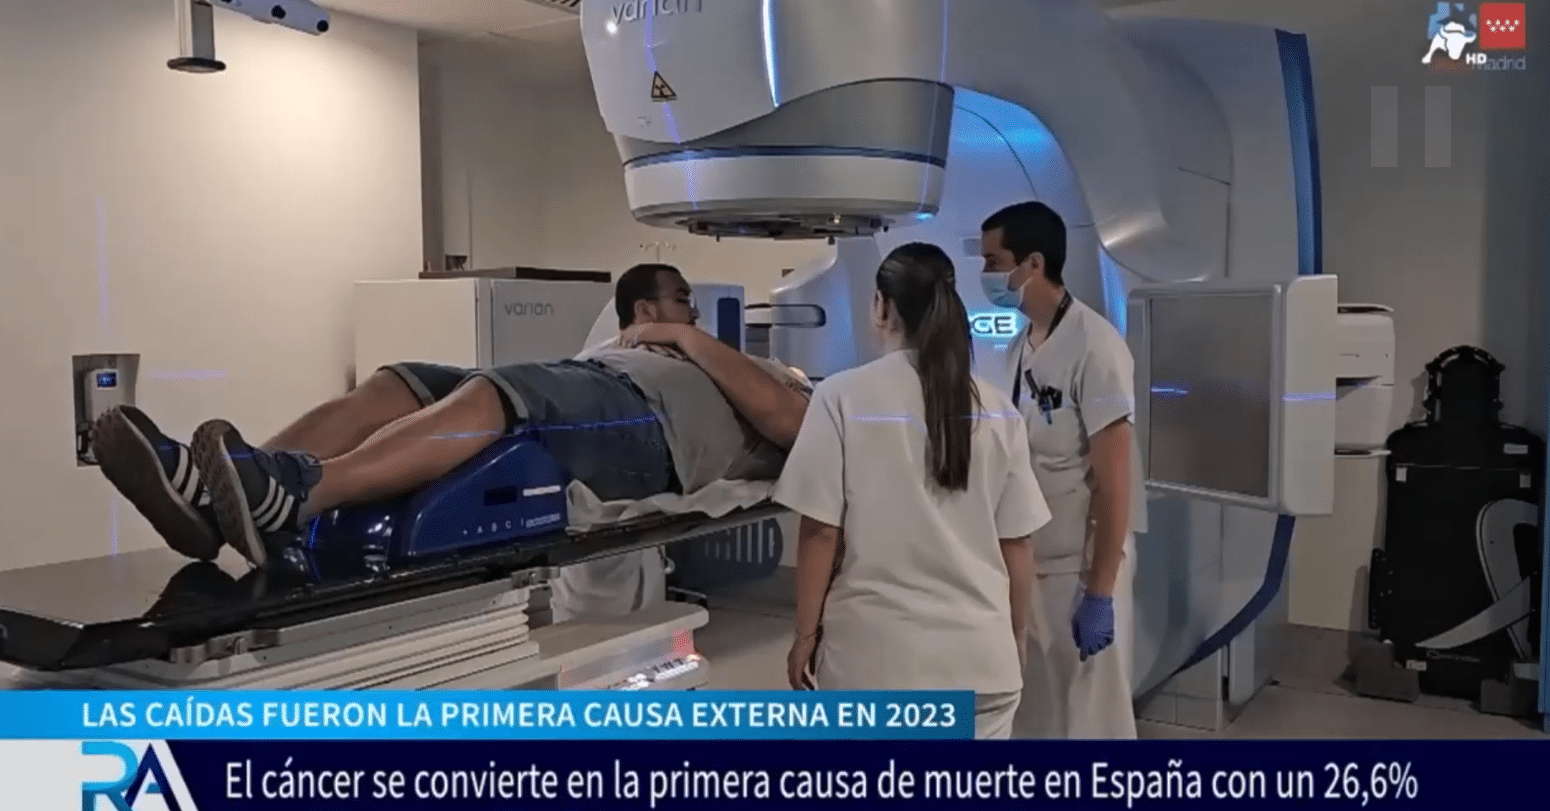  El cáncer es la primera causa de muerte en España por delante de las enfermedades cardiovasculares